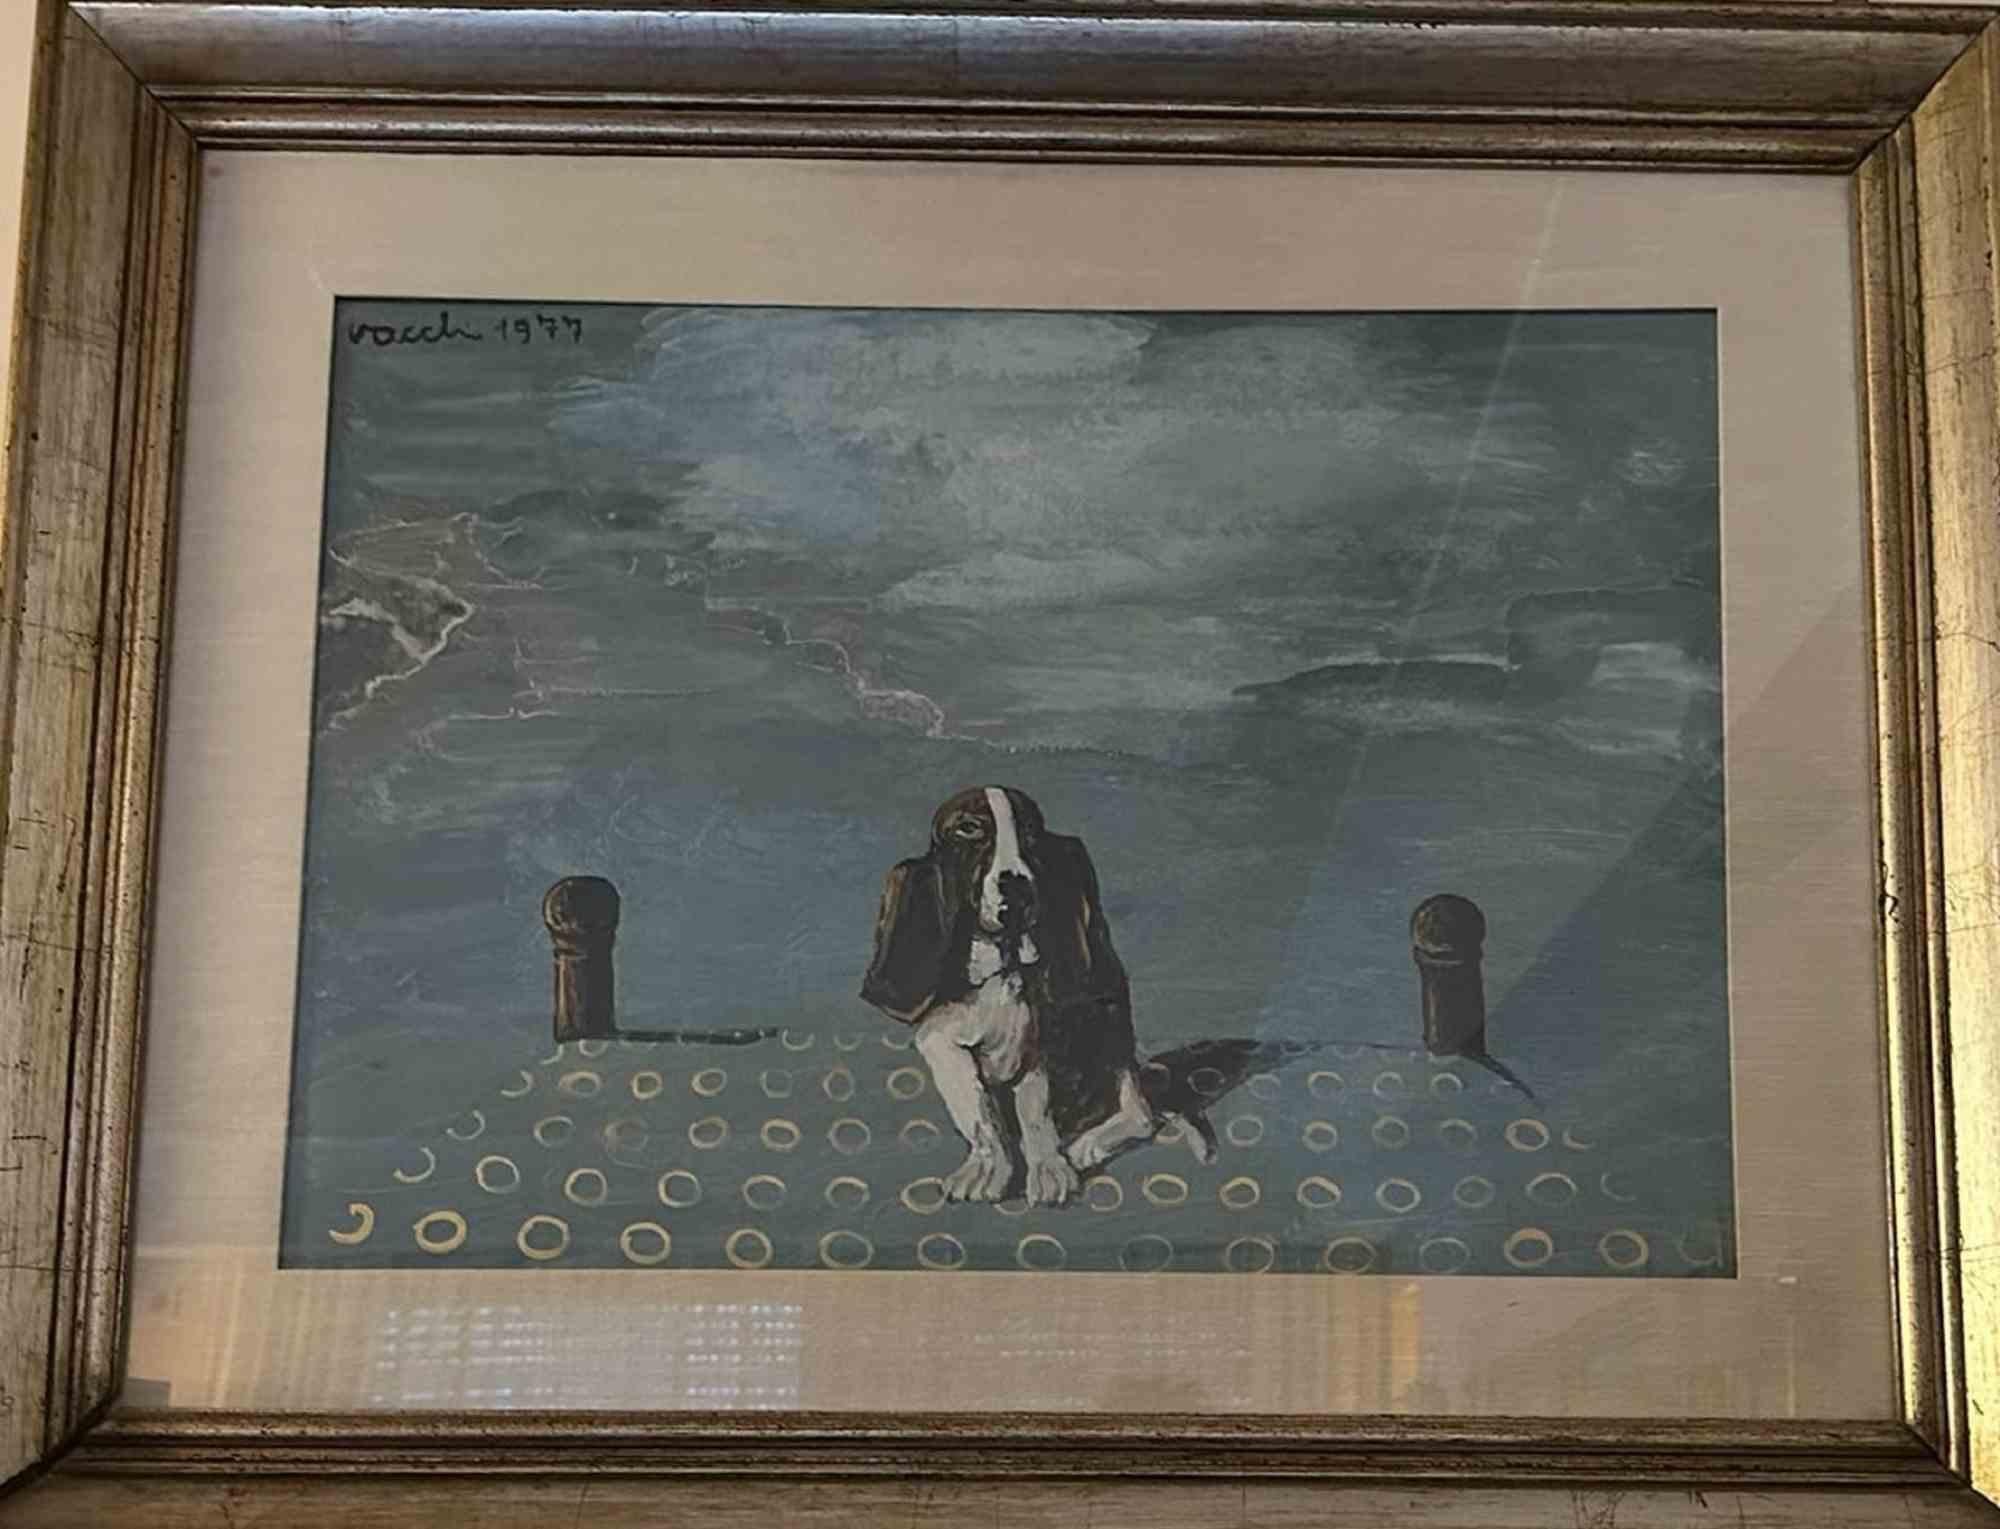 Hund ist ein Original-Ölgemälde auf Leinwand von Sergio Vacchi aus dem Jahr 1977.

Handsigniert und datiert oben links. Einschließlich eines goldenen Rahmens. Abmessungen des Rahmens: 76x97 cm.

Sehr guter Zustand.